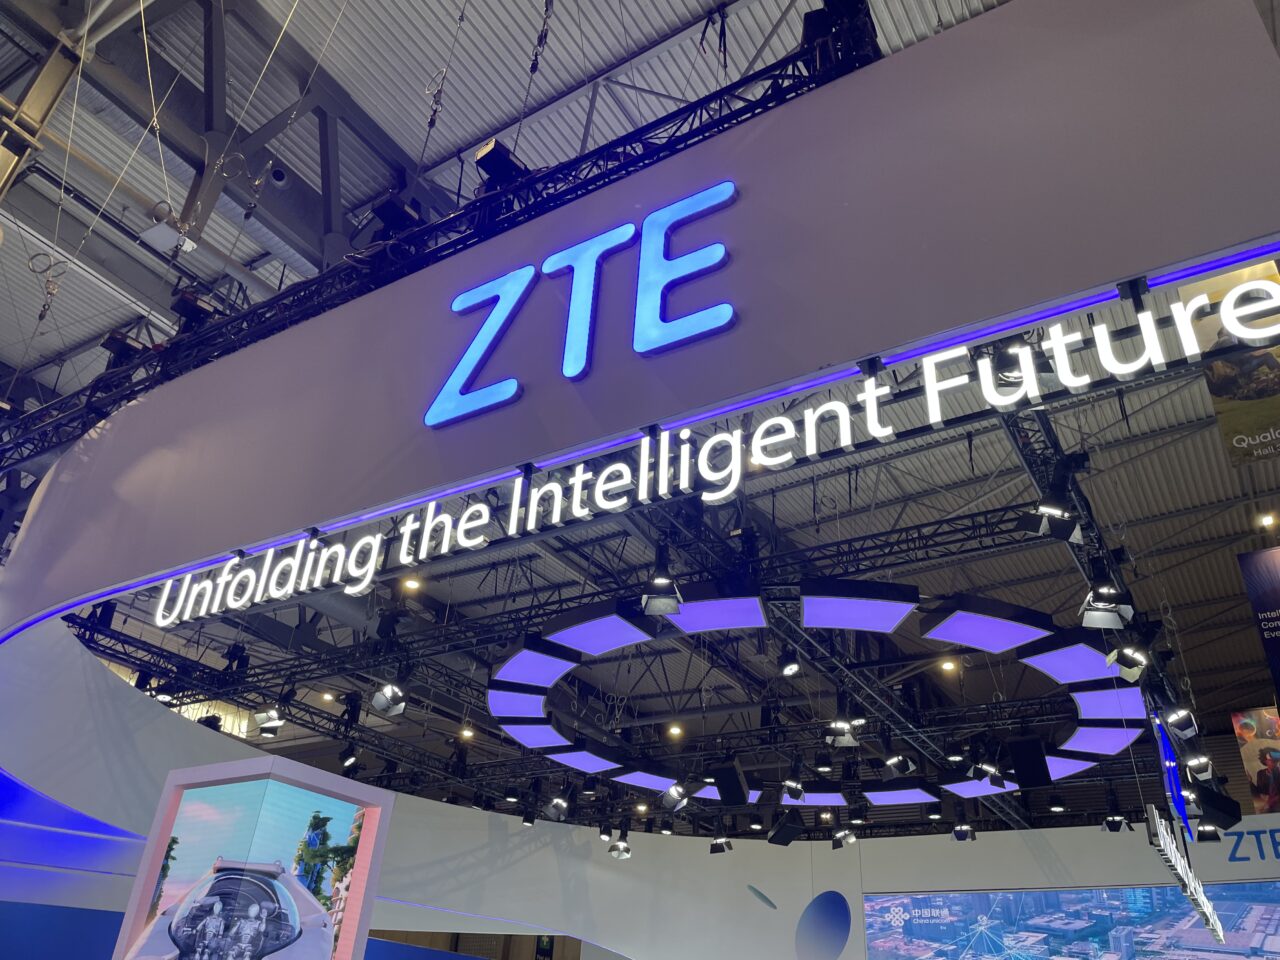 Zdjęcie stoiska firmy ZTE z niebieskimi literami na górze i hasłem "Unfolding the Intelligent Future" na tle wystawy technologicznej.